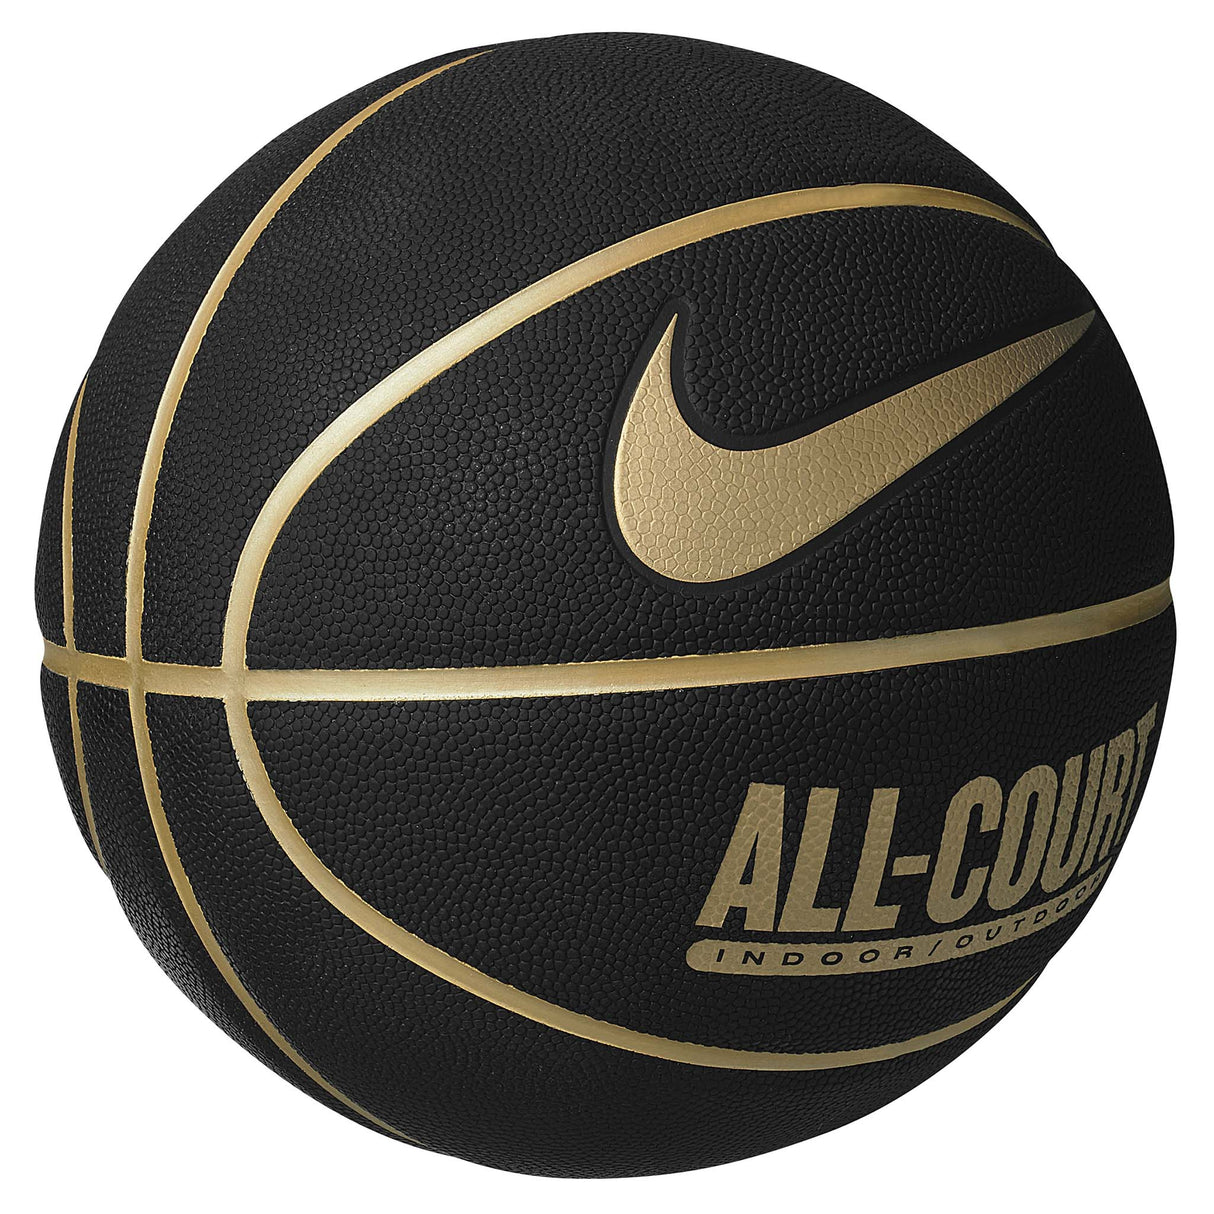 Nike Everyday All Court 8P ballon de basketball black metallic gold lateral